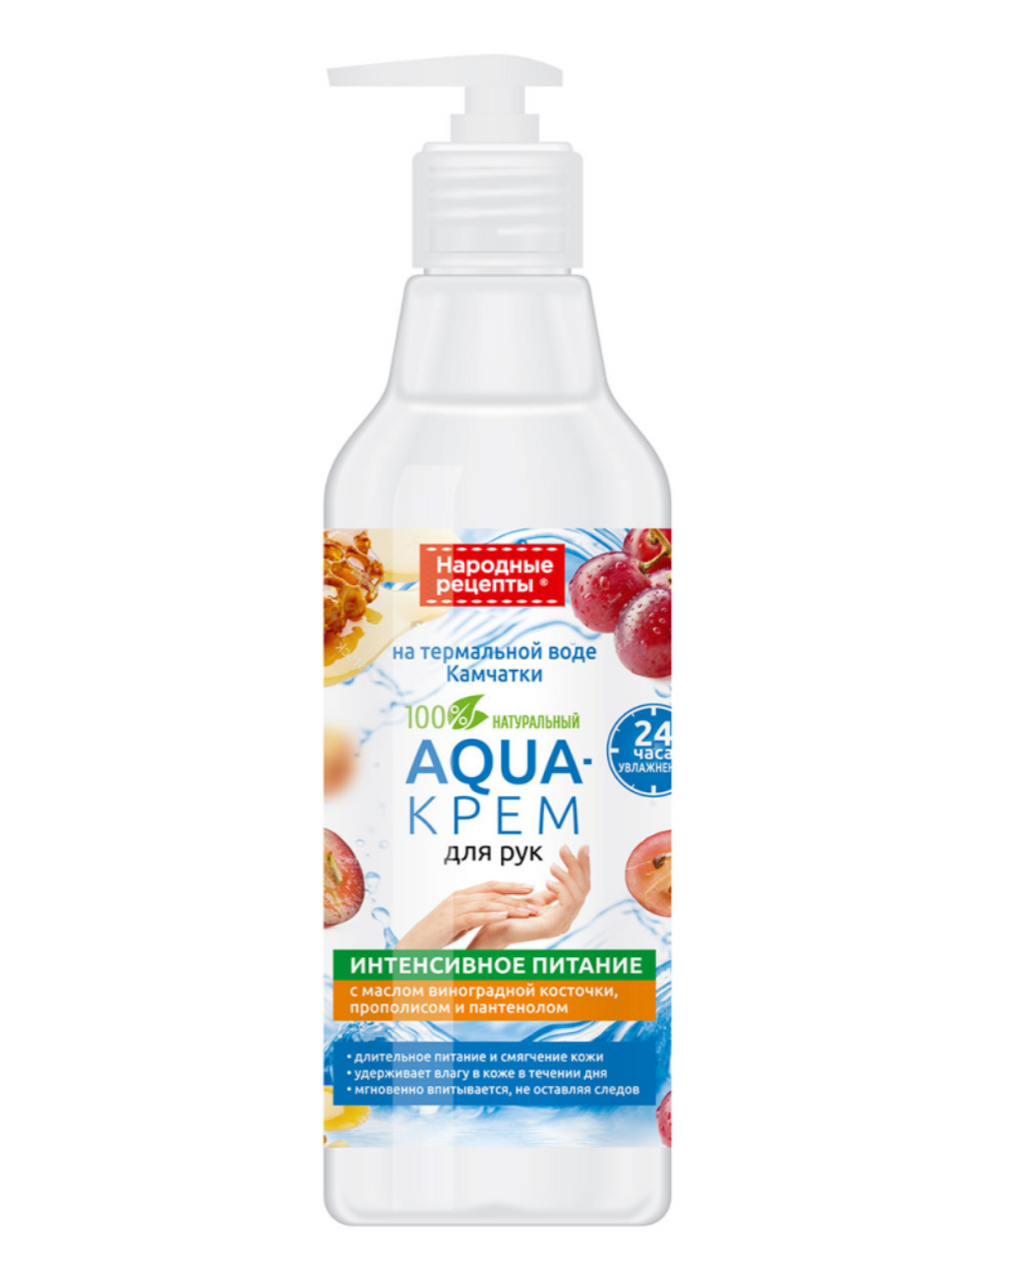 фото упаковки Народные рецепты Aqua-крем для рук на термальной воде Камчатки